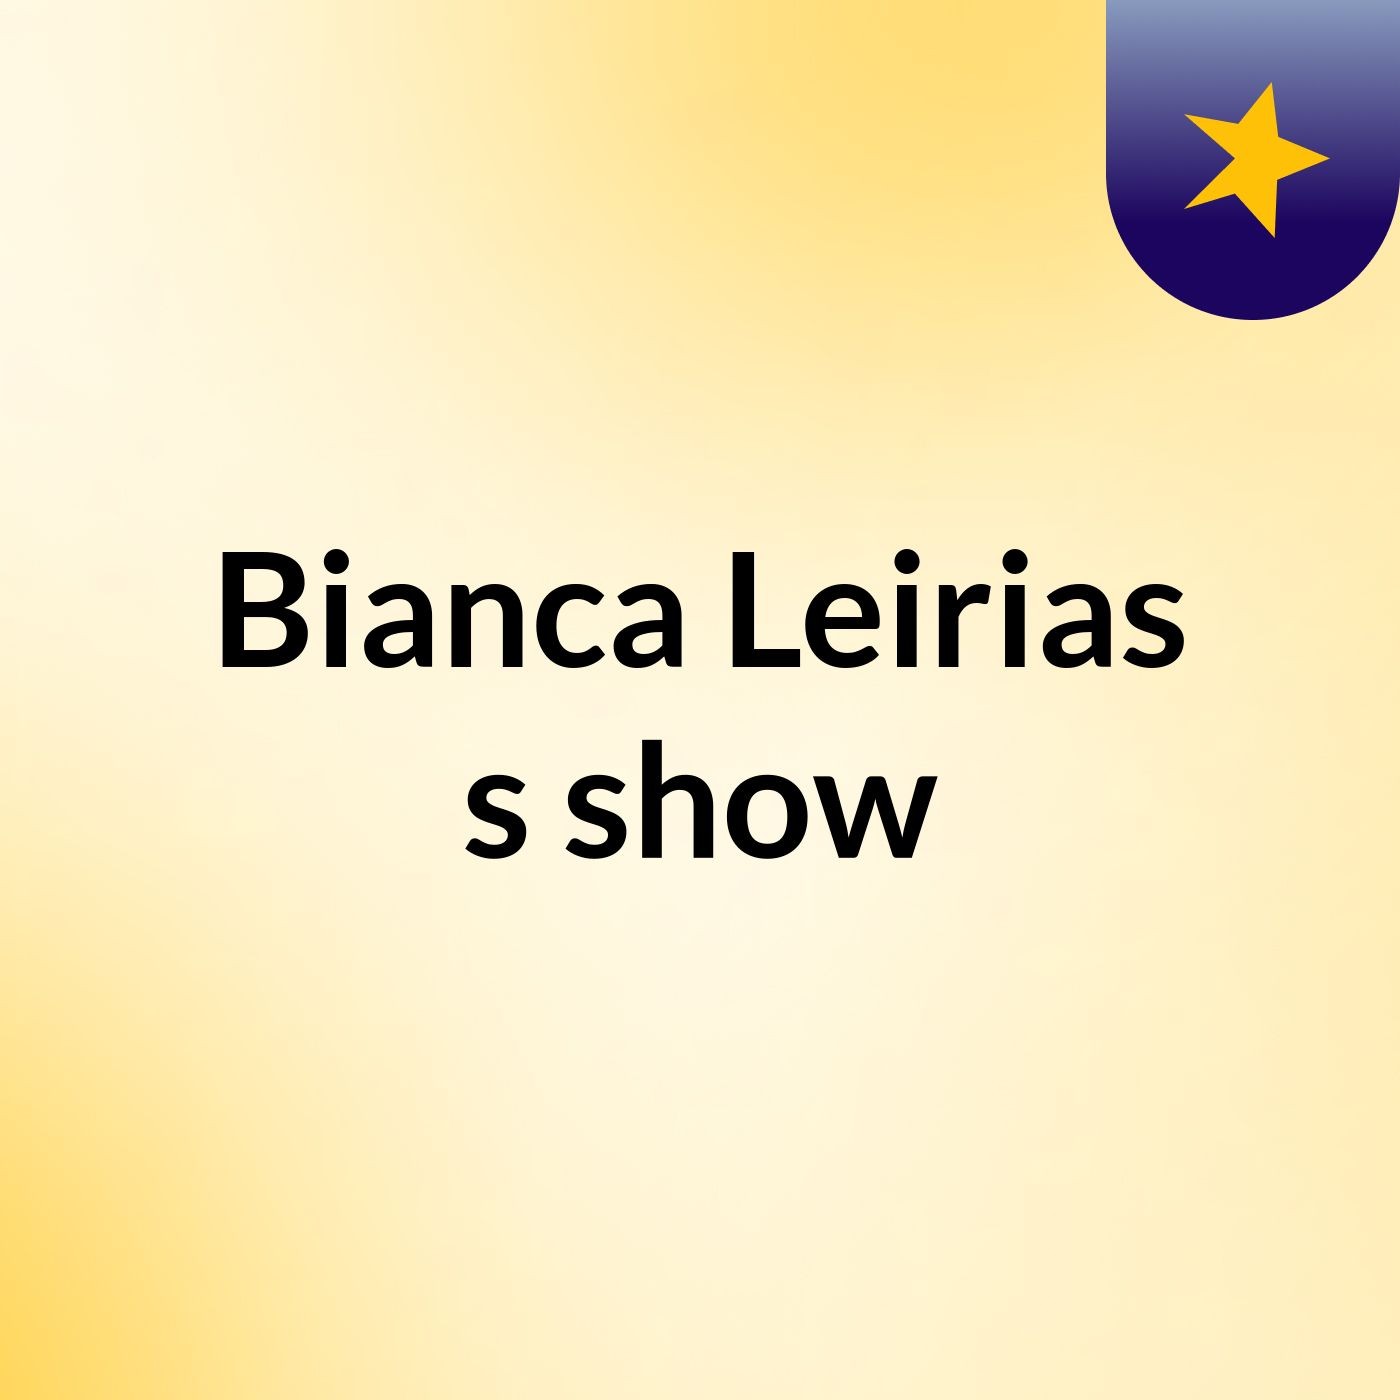 Bianca Leirias's show